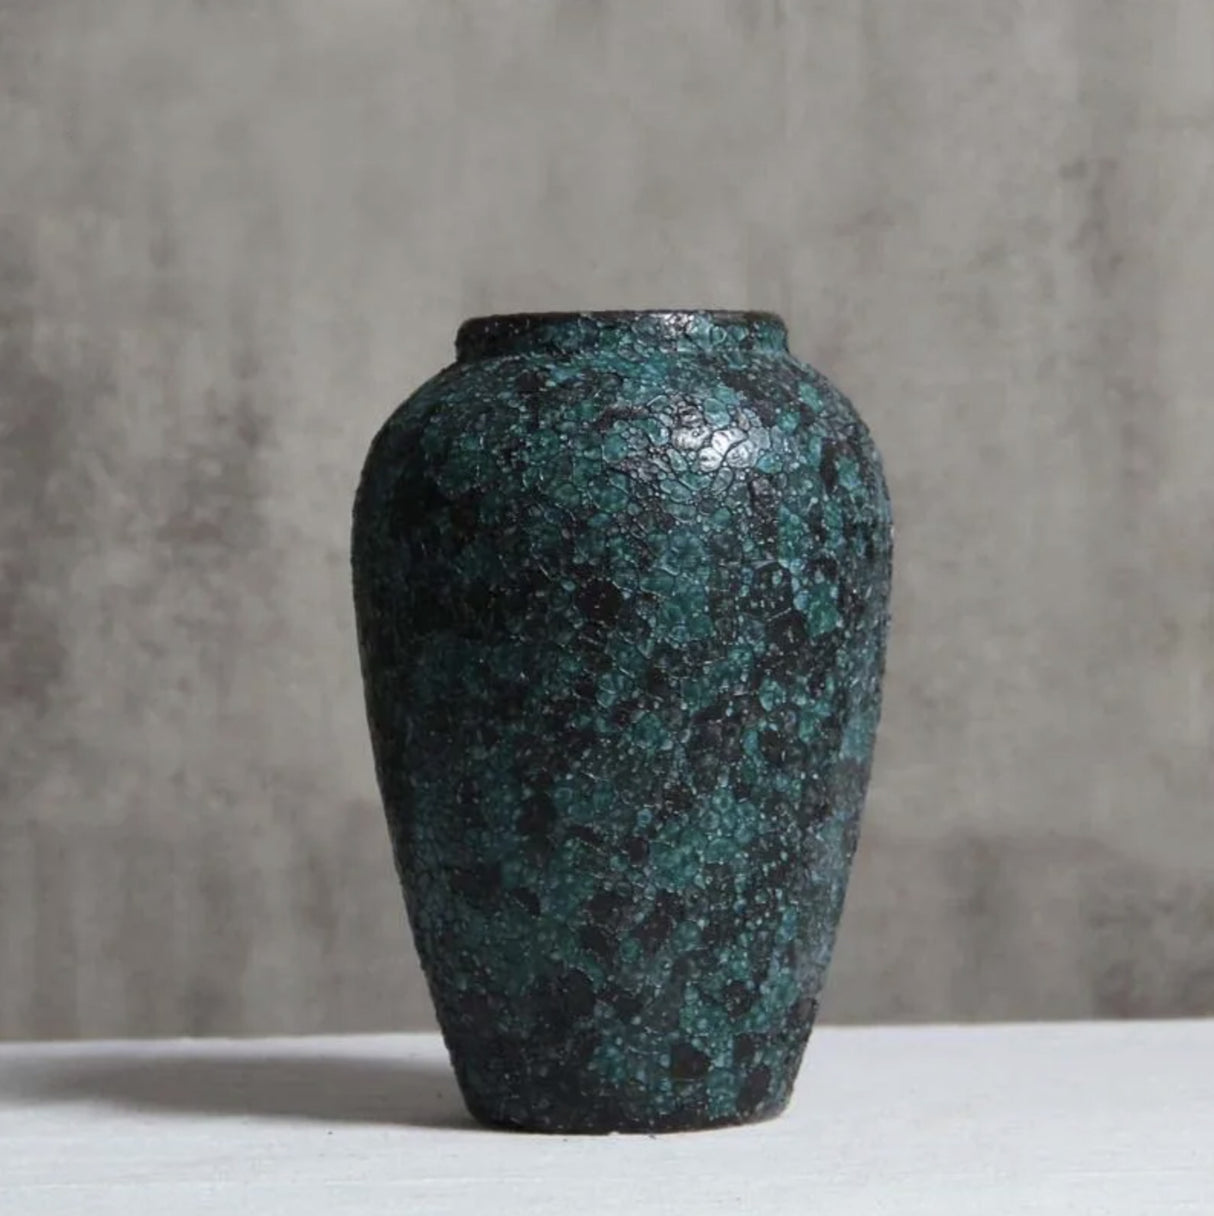 Large Japanese vase